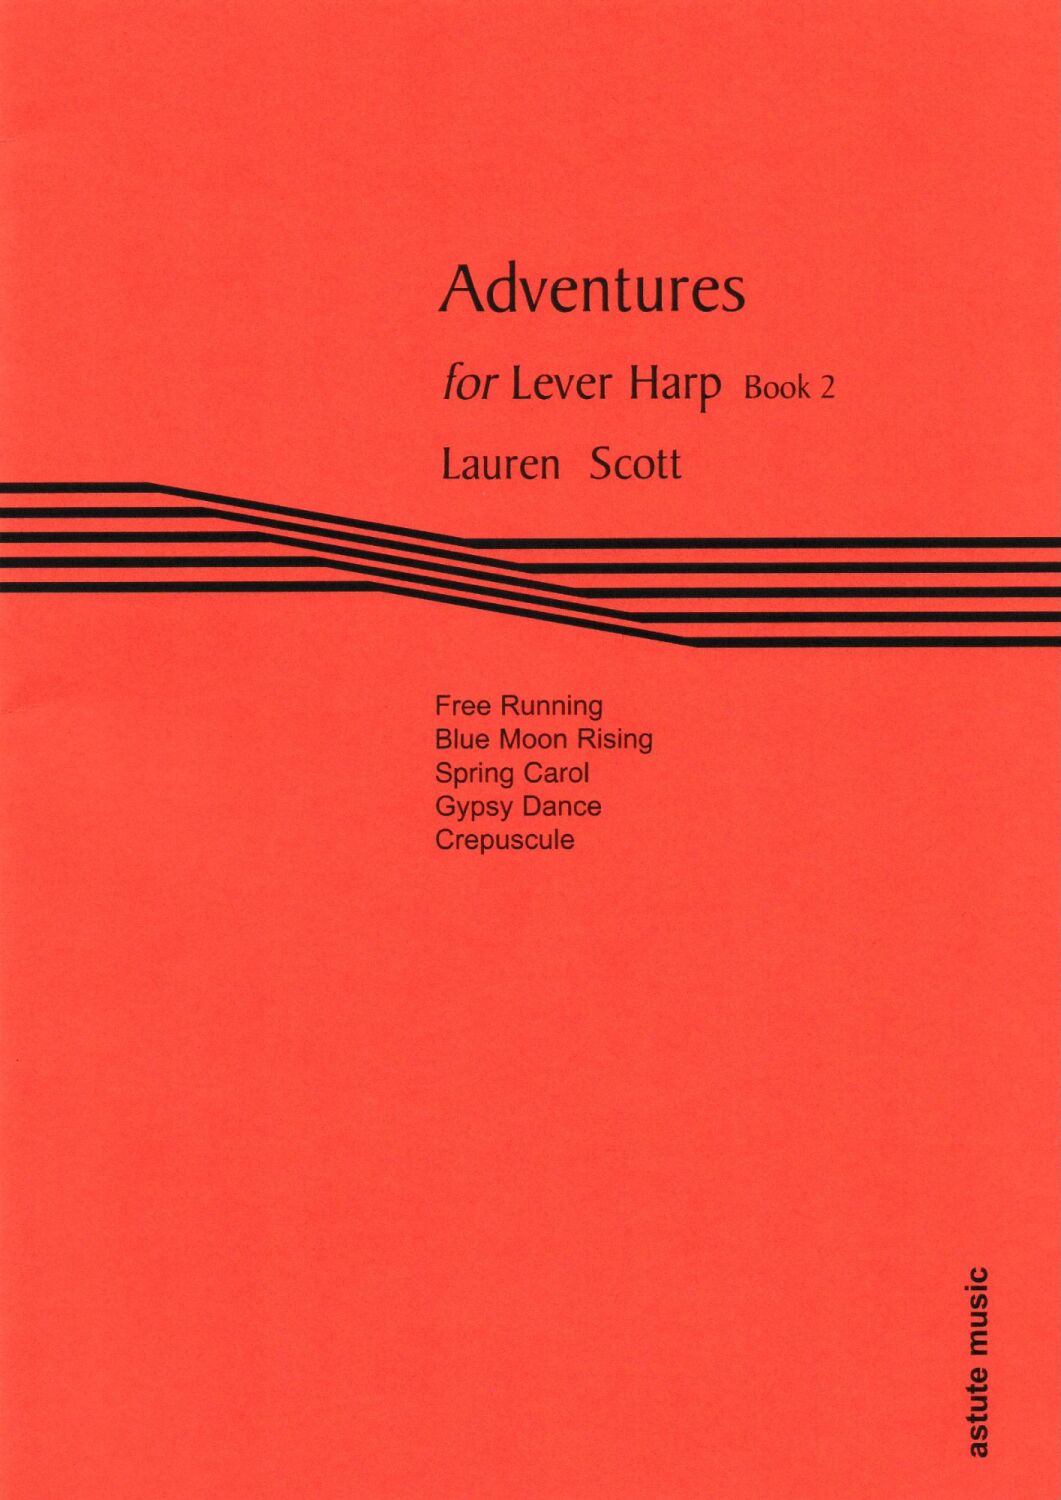 Adventures for Lever Harp Book 2 - Lauren Scott 